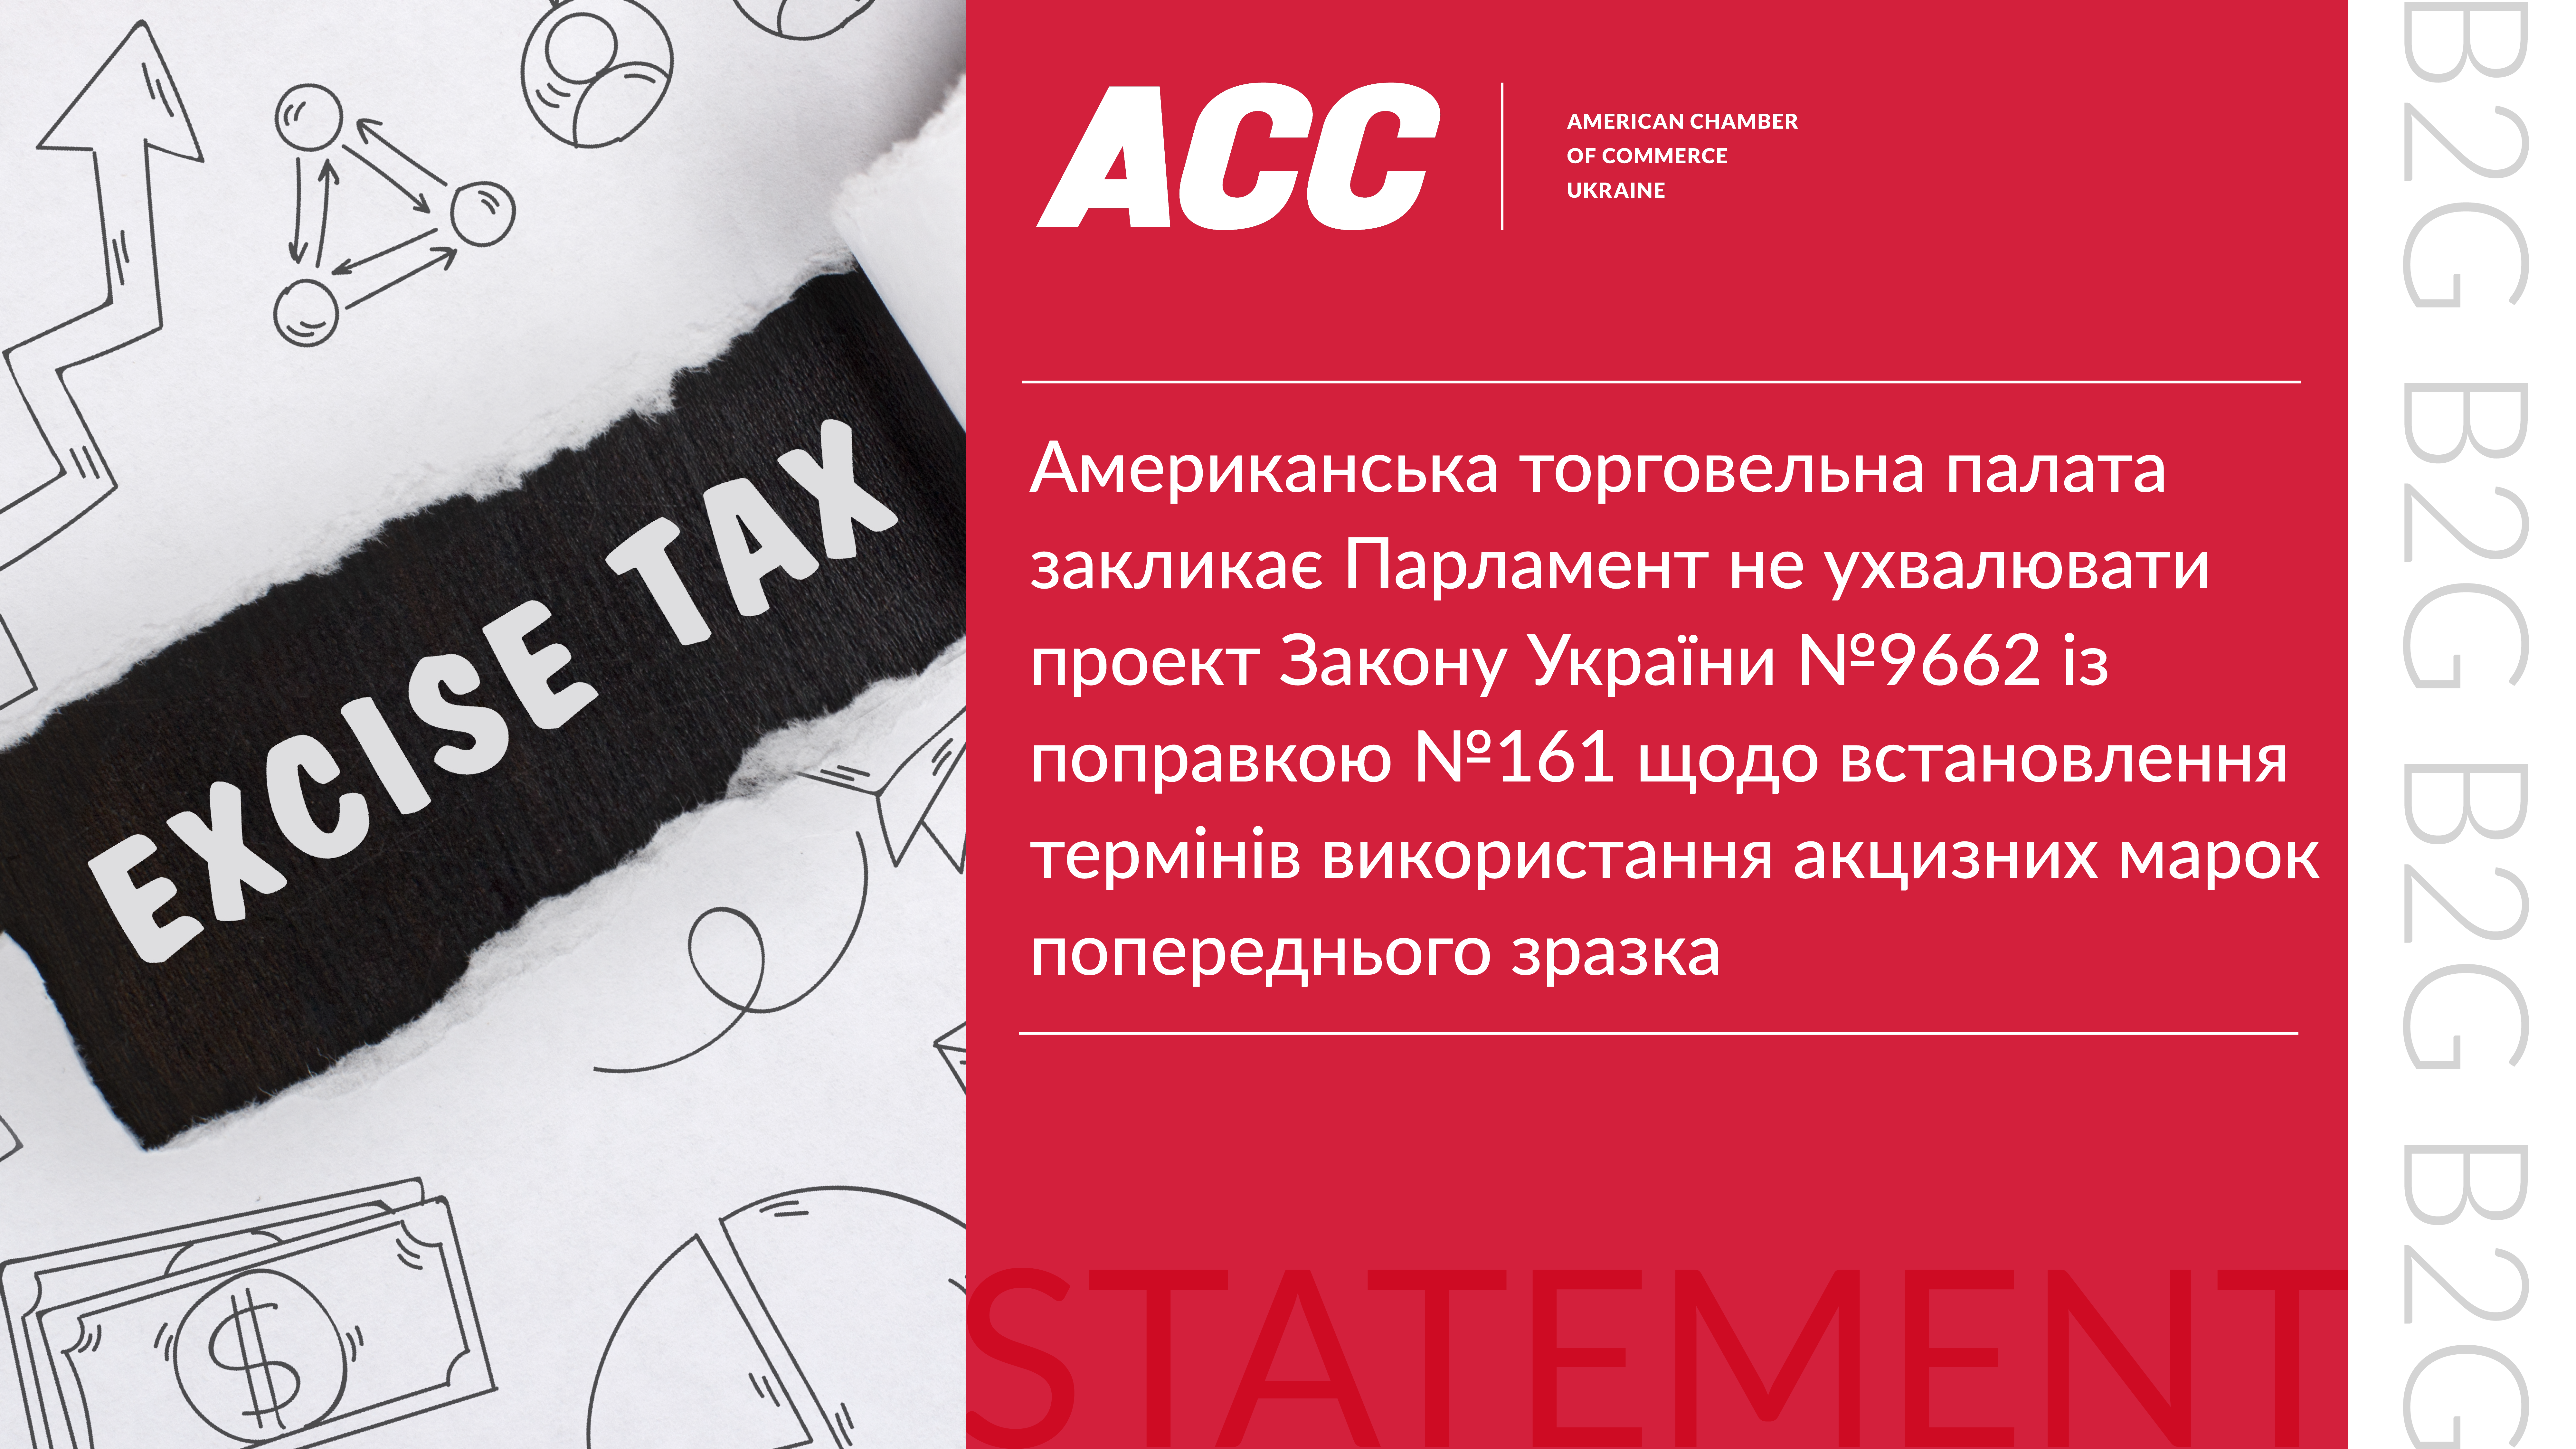 Американська торговельна палата закликає Парламент не ухвалювати проект Закону України №9662 із поправкою №161 щодо встановлення термінів використання акцизних марок попереднього зразка